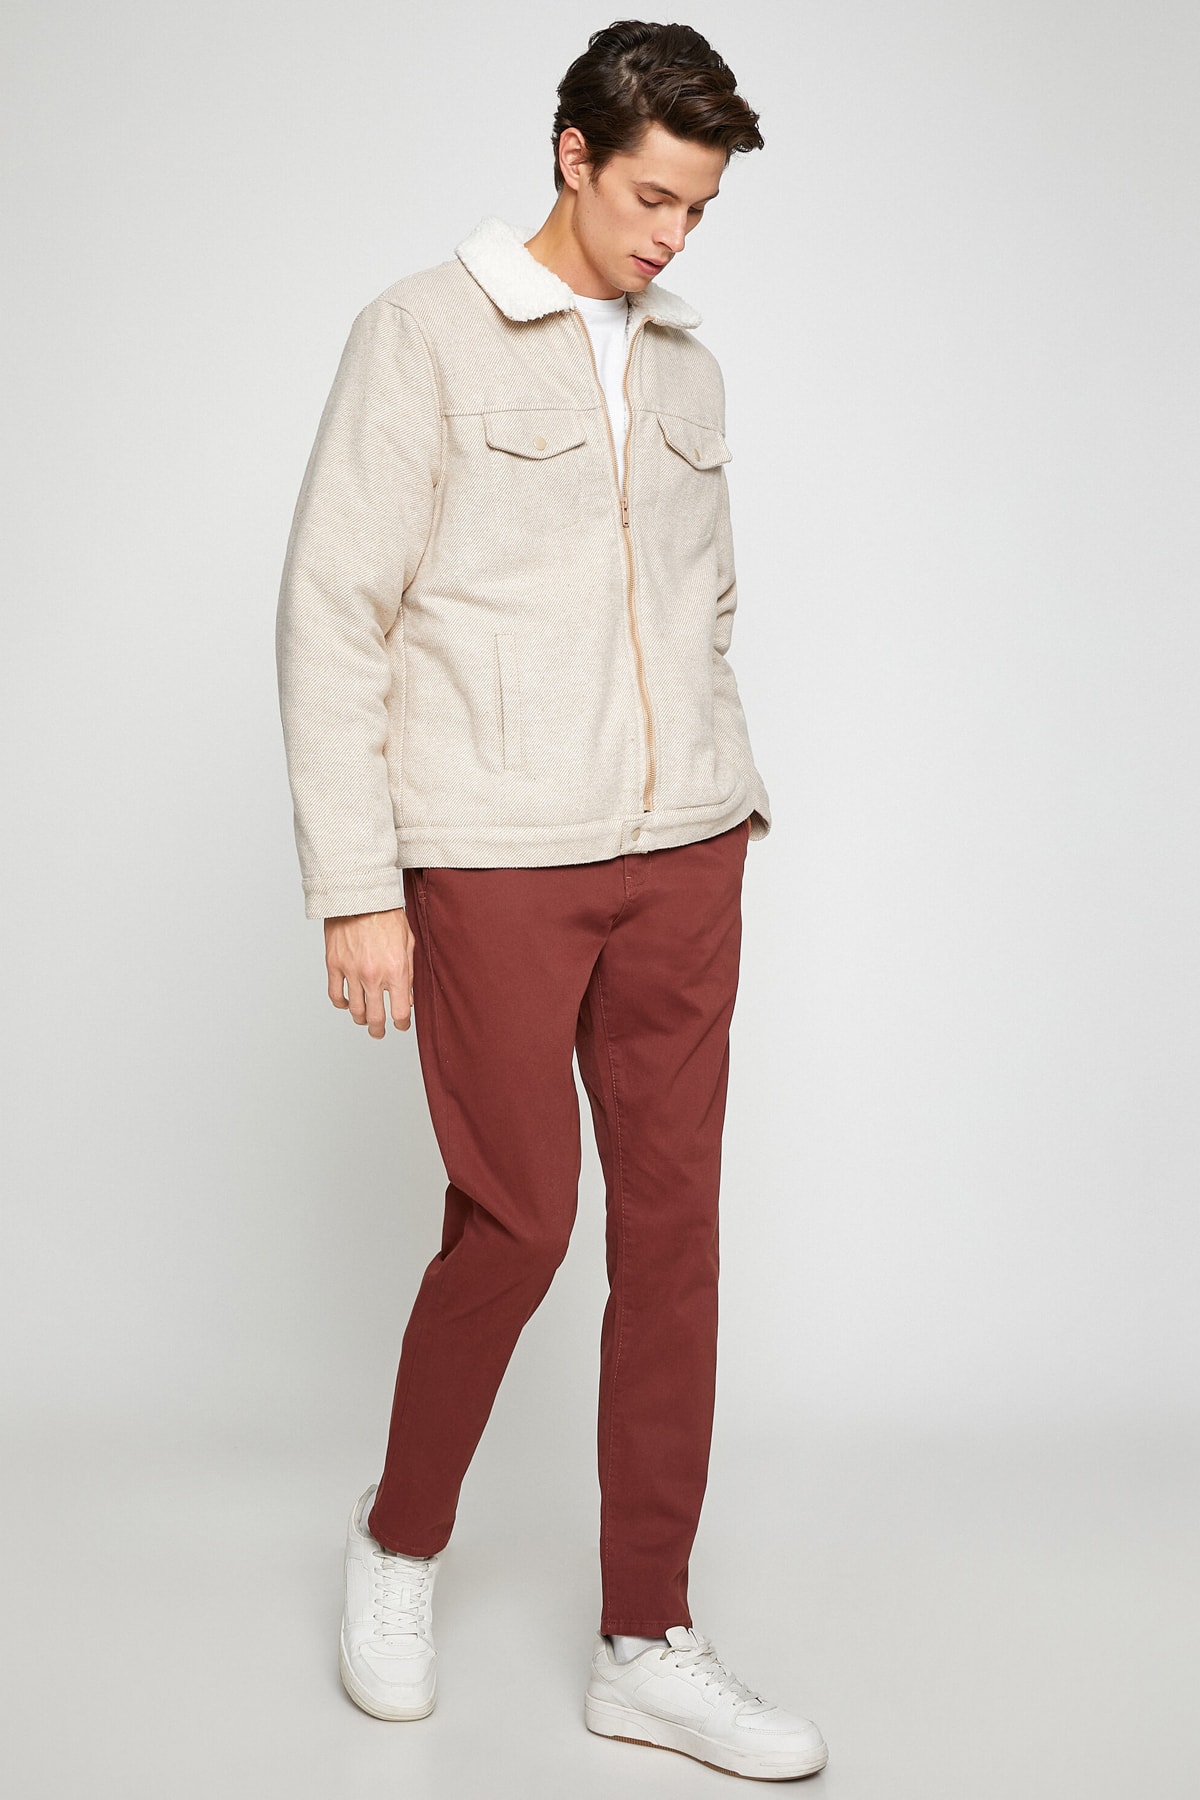 Базовые брюки чинос Koton, коричневый базовые брюки чиносы из хлопка koton коричневый